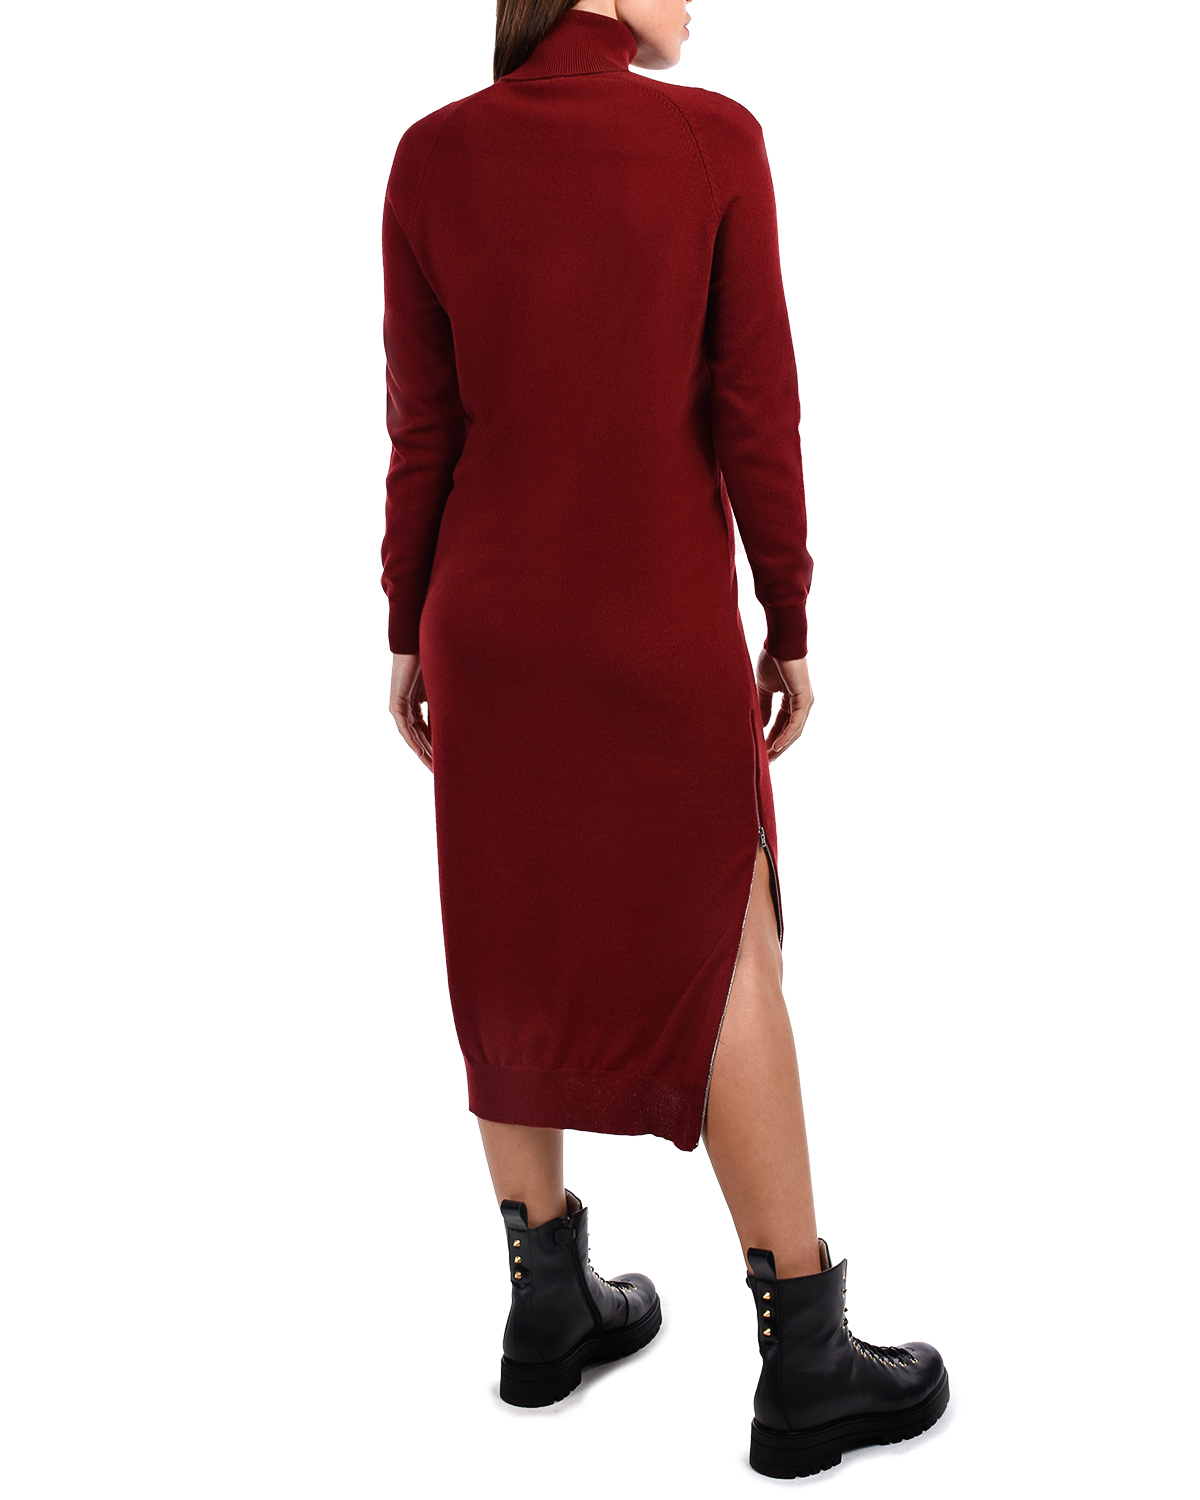 Бордовое платье-водолазка из шерсти и кашемира MRZ - фото 3